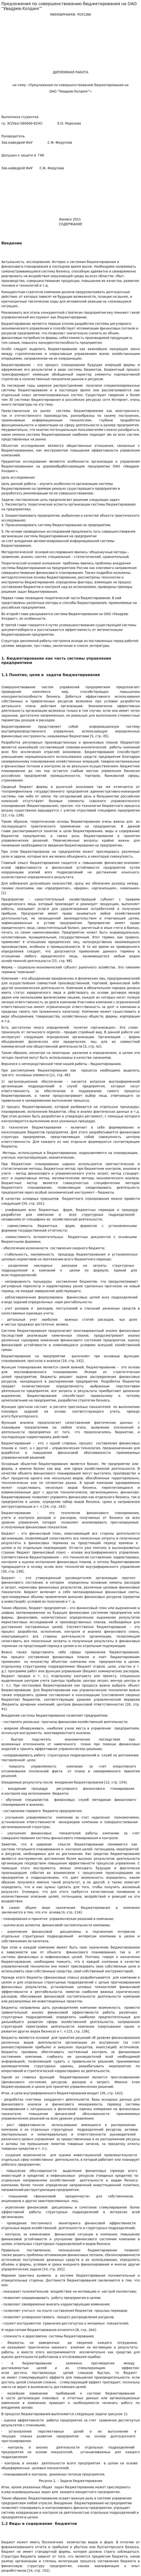 Предложения по совершенствованию бюджетирования на ОАО “Увадрев-Холдинг”